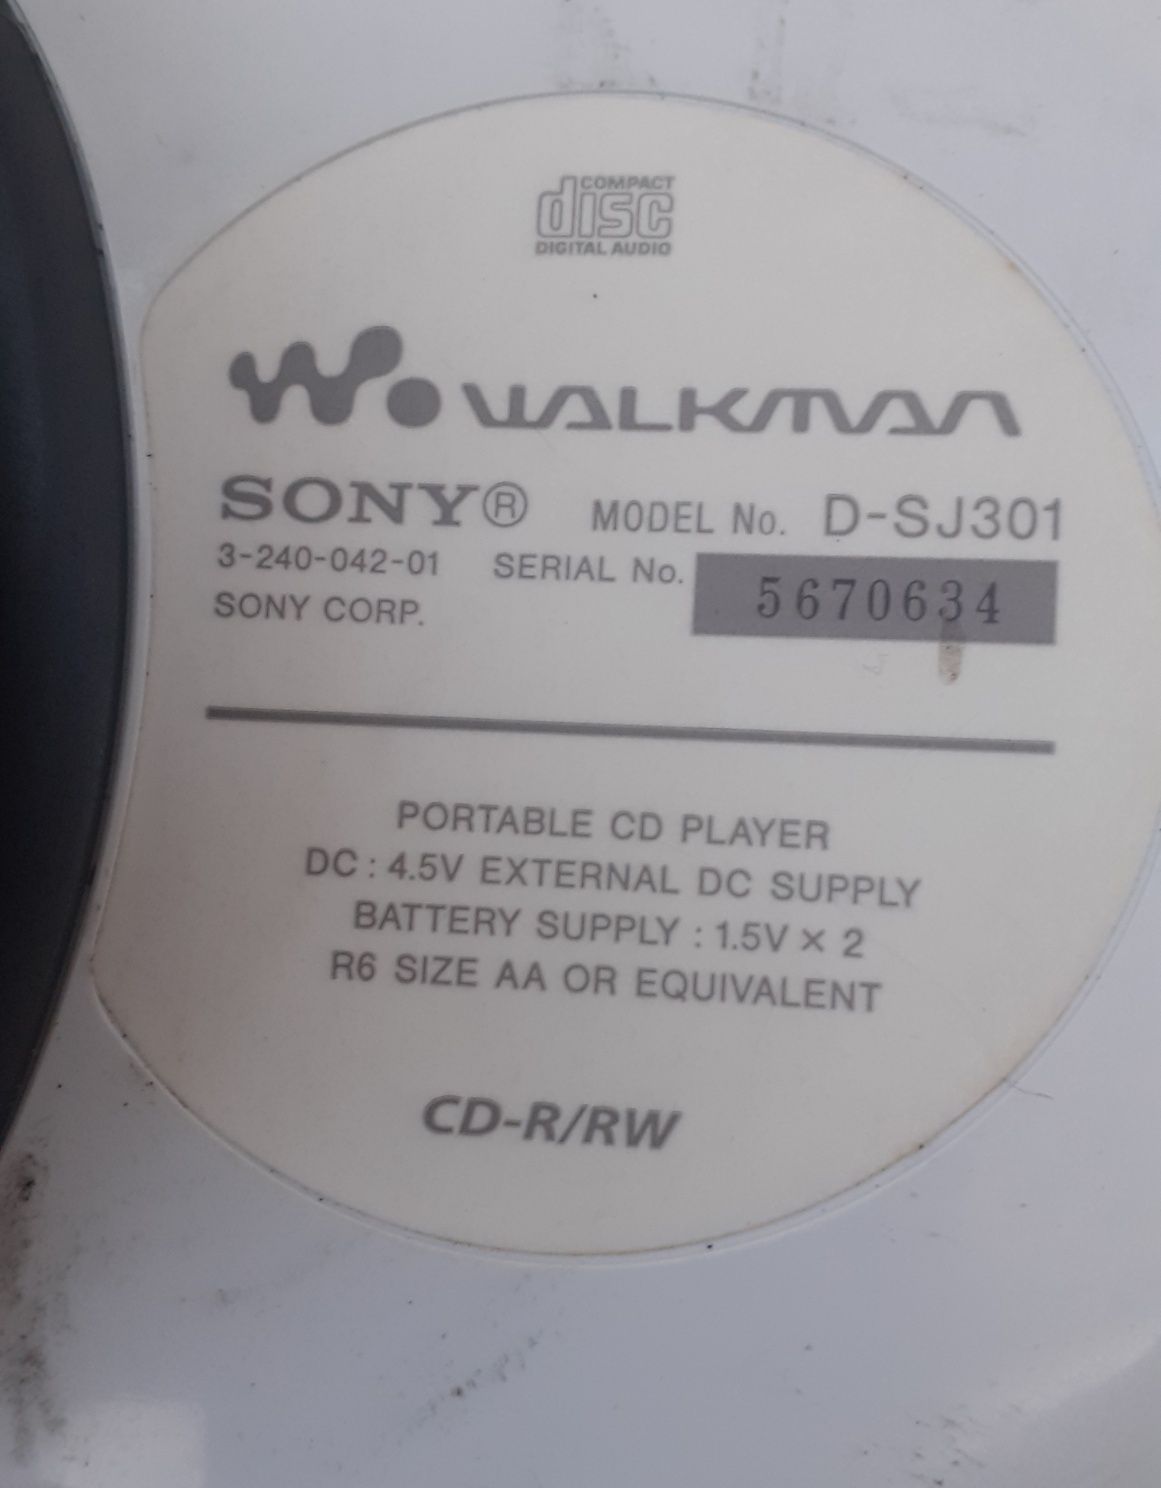 Walkman Sony D-SJ301